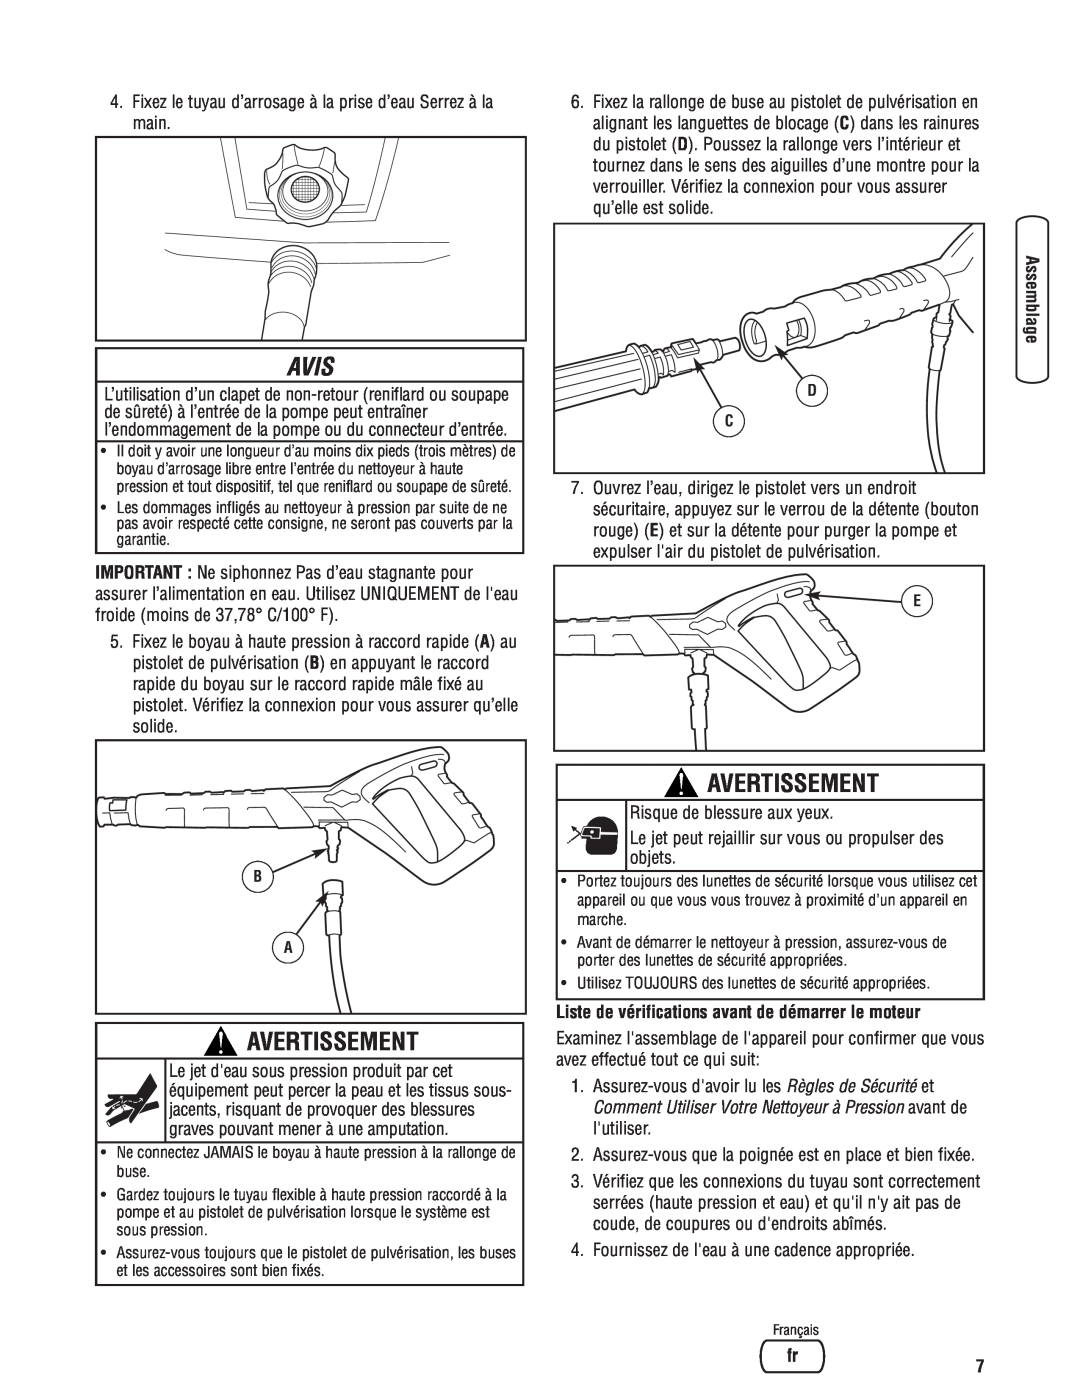 Briggs & Stratton Electric Pressure Washer manual Liste de vérifications avant de démarrer le moteur, Avis, Avertissement 